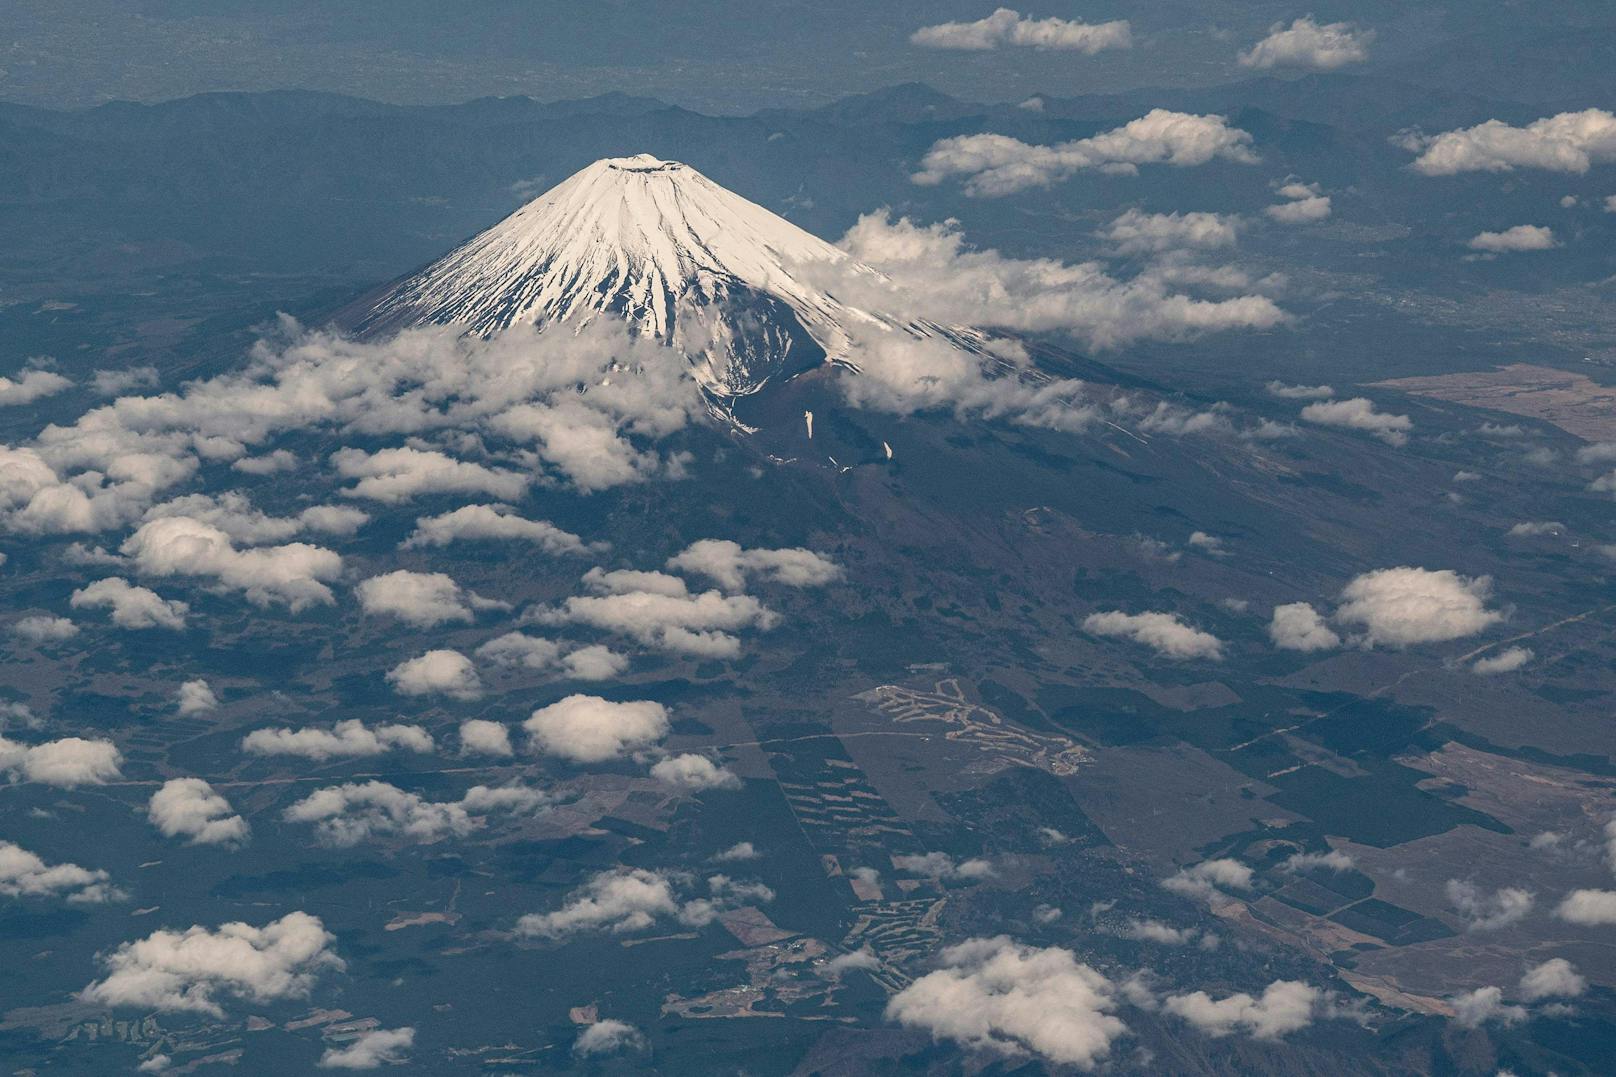 Mikroplastikpartikel wurden in den Wolken gefunden, die den Gipfel des japanischen Mount Fuji umgeben.